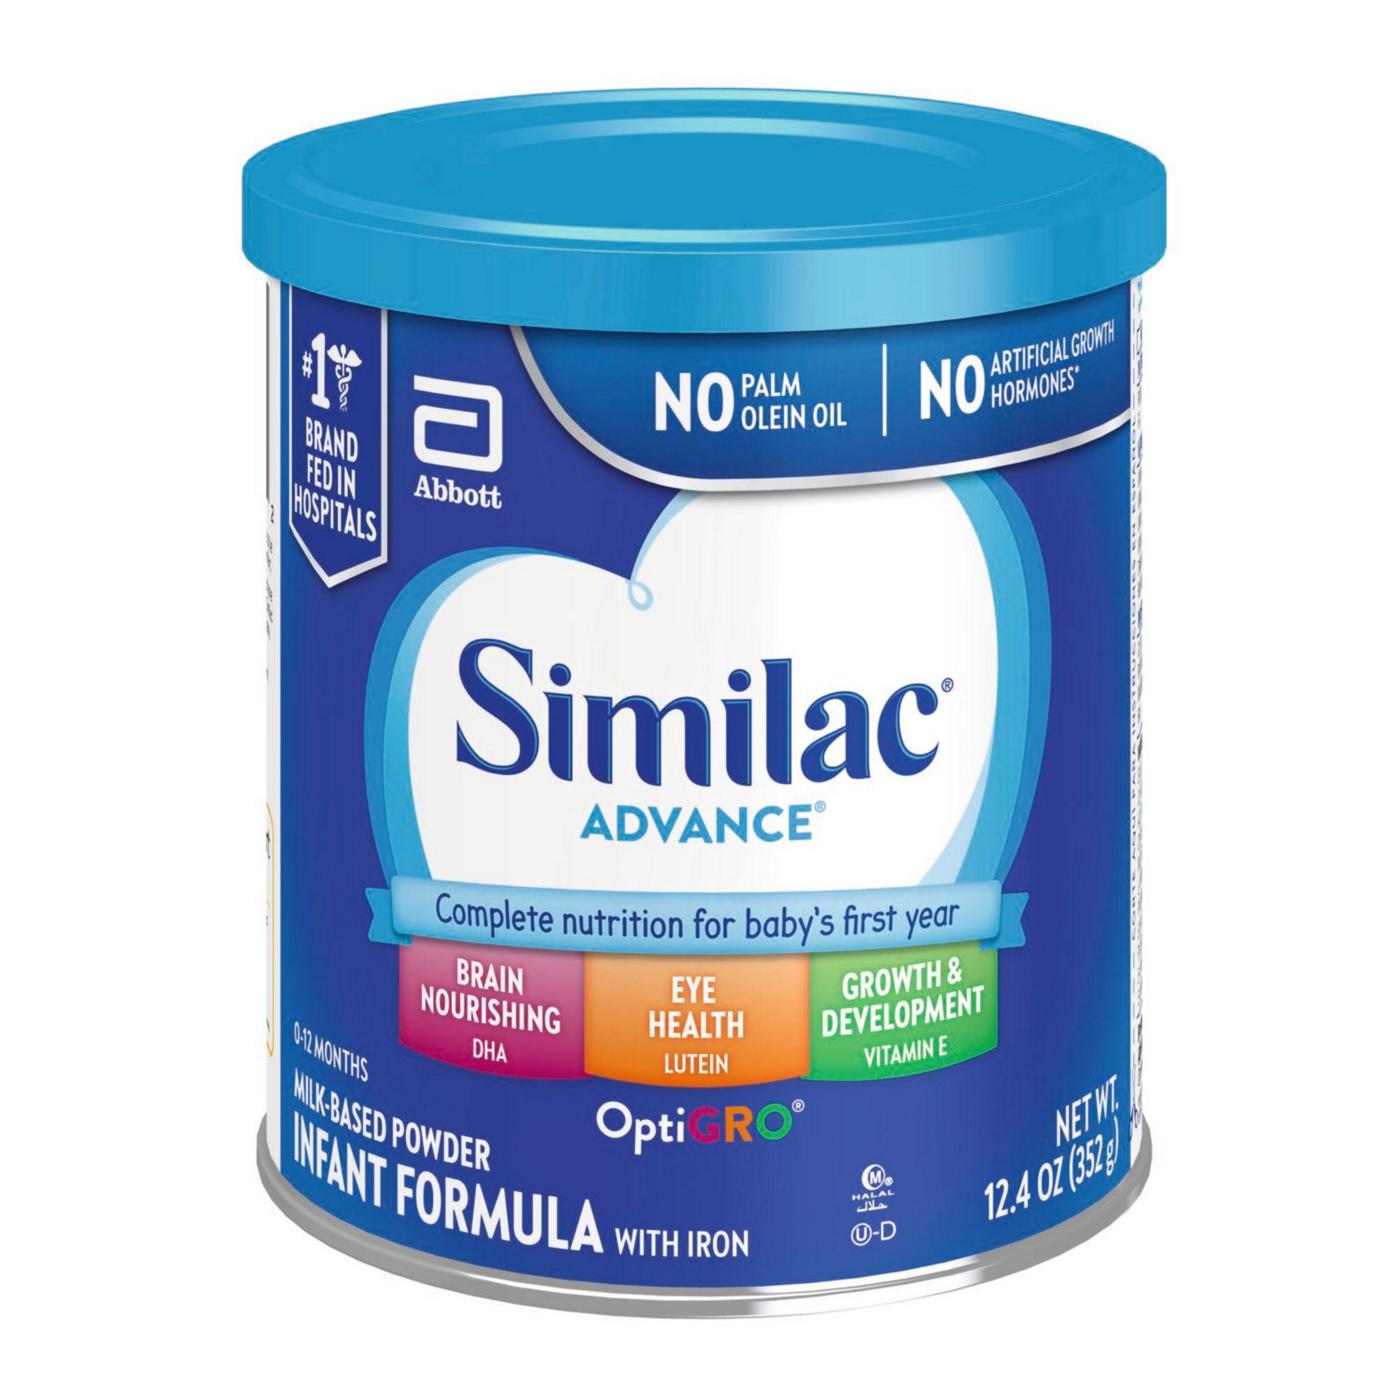 Similac Advance Milk-Based Powder Infant Formula with Iron; image 5 of 10